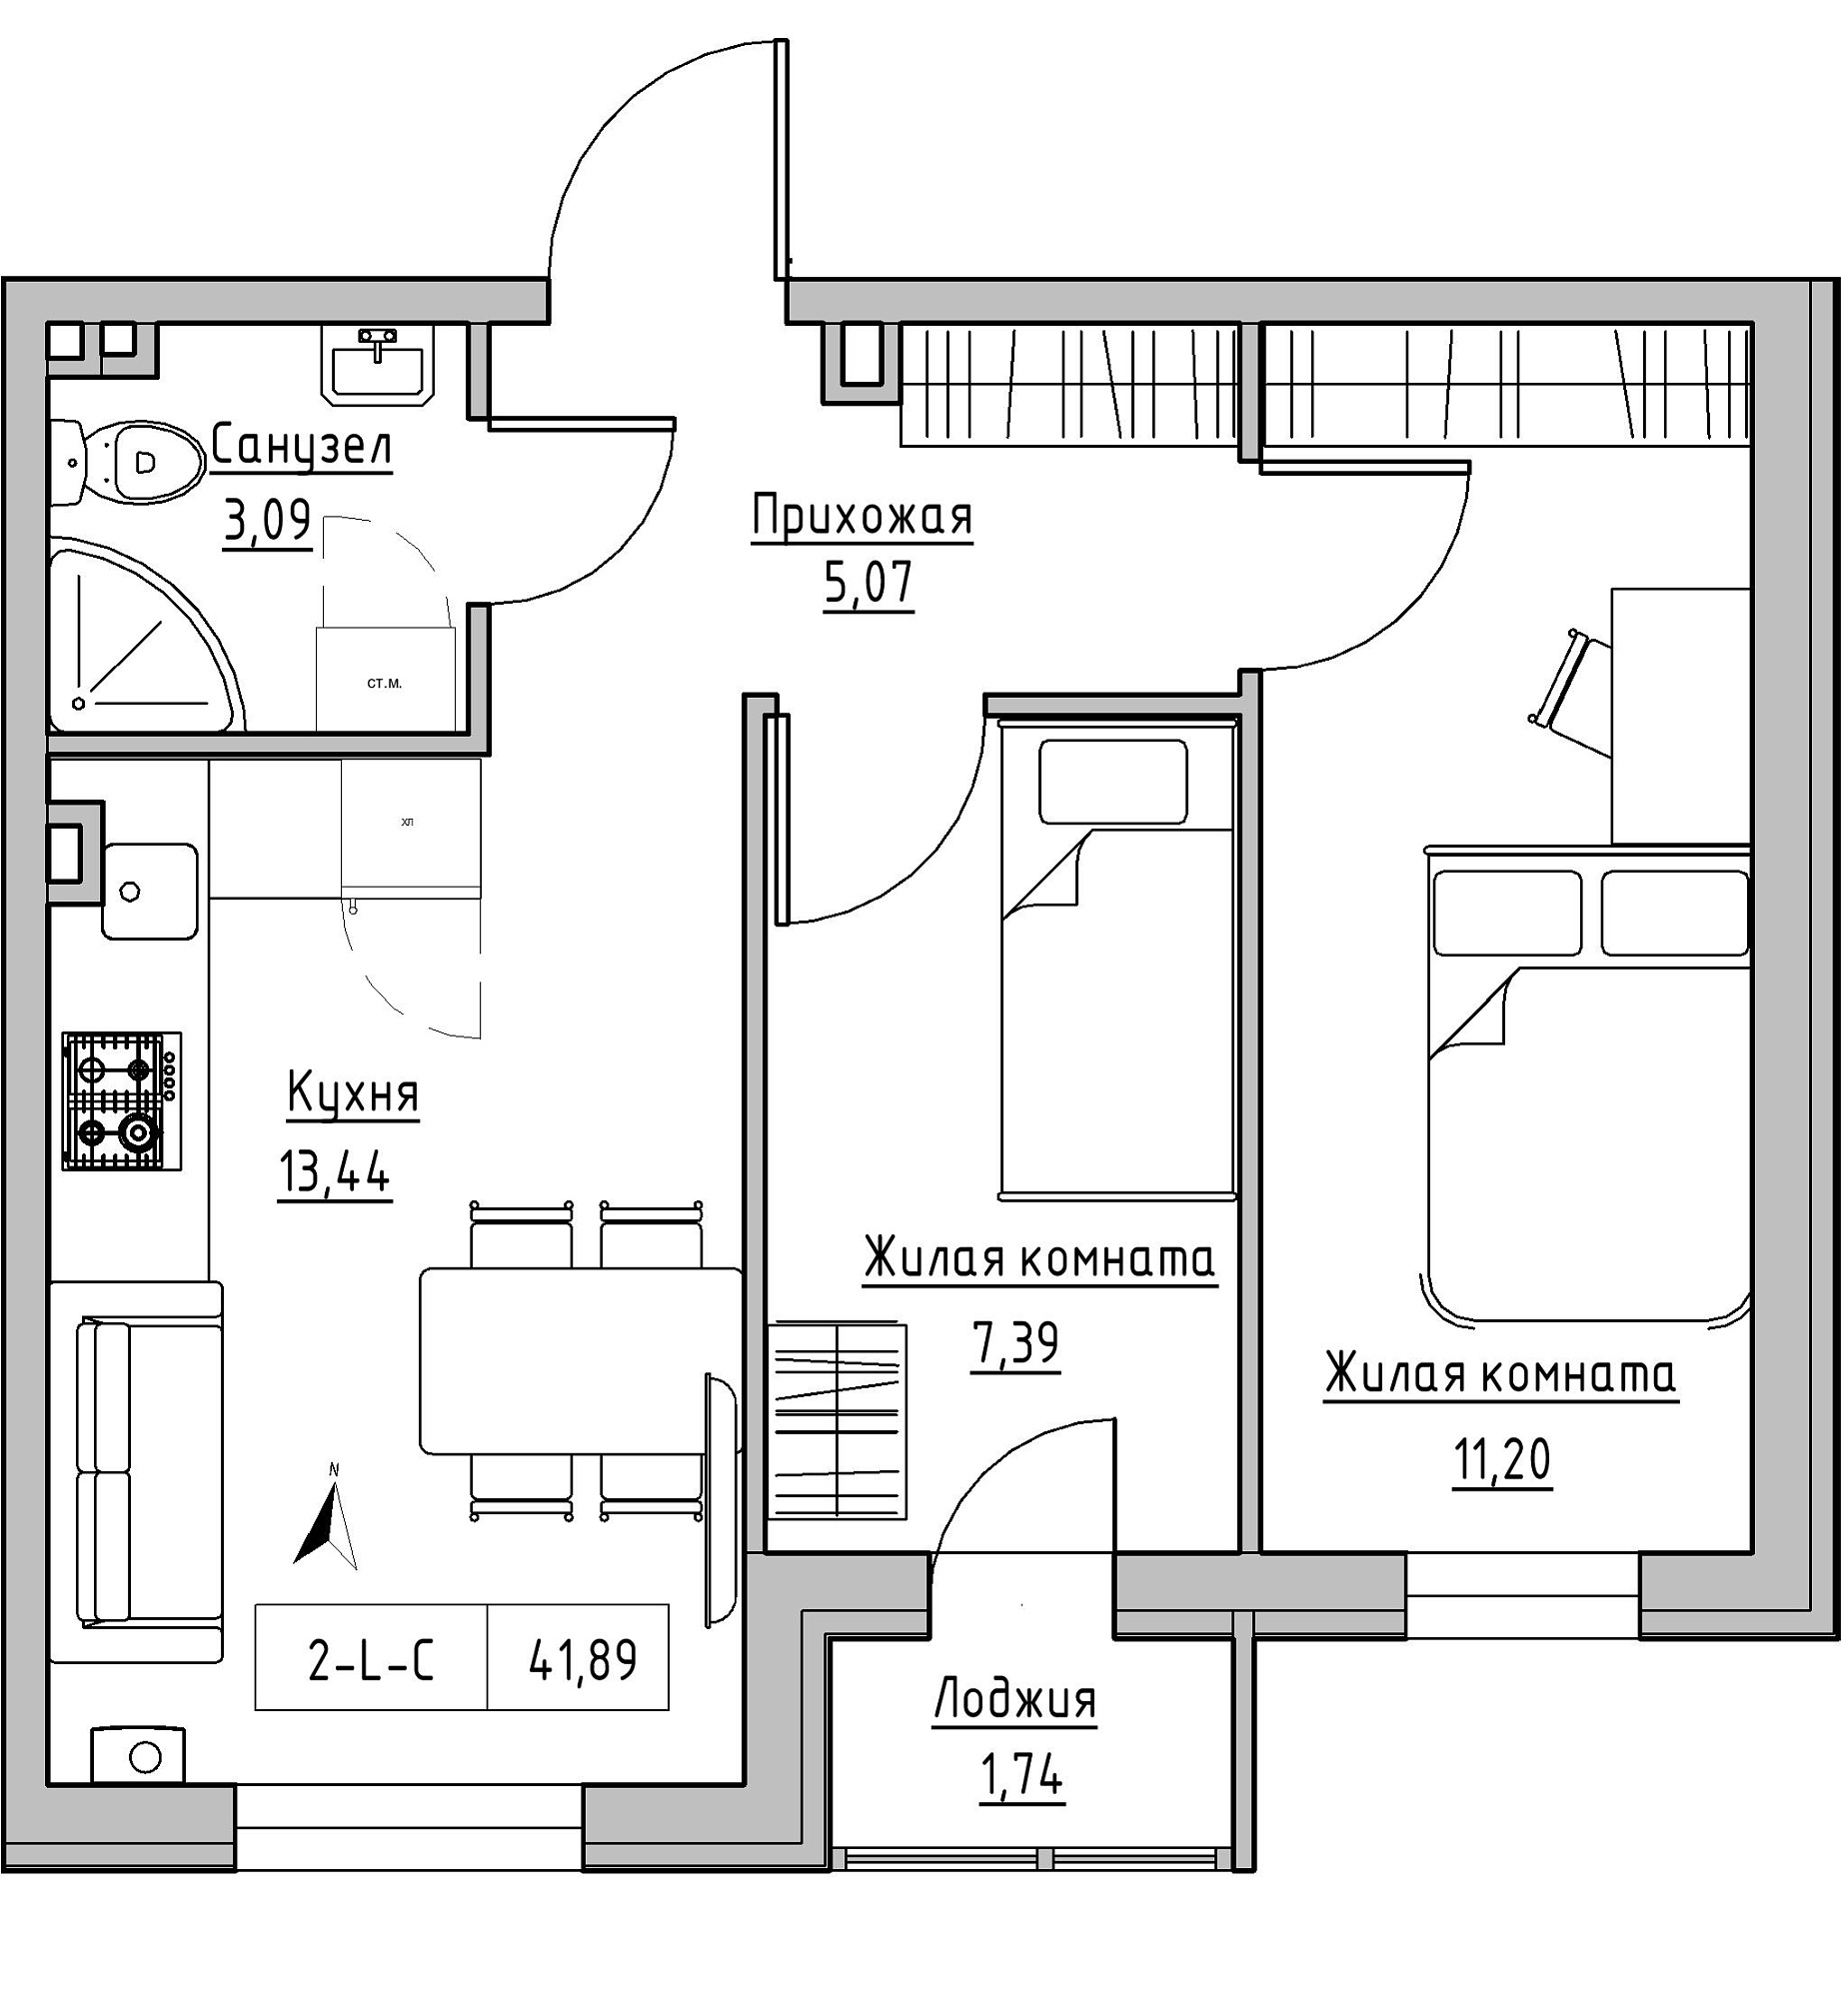 Планування 2-к квартира площею 41.89м2, KS-024-01/0005.